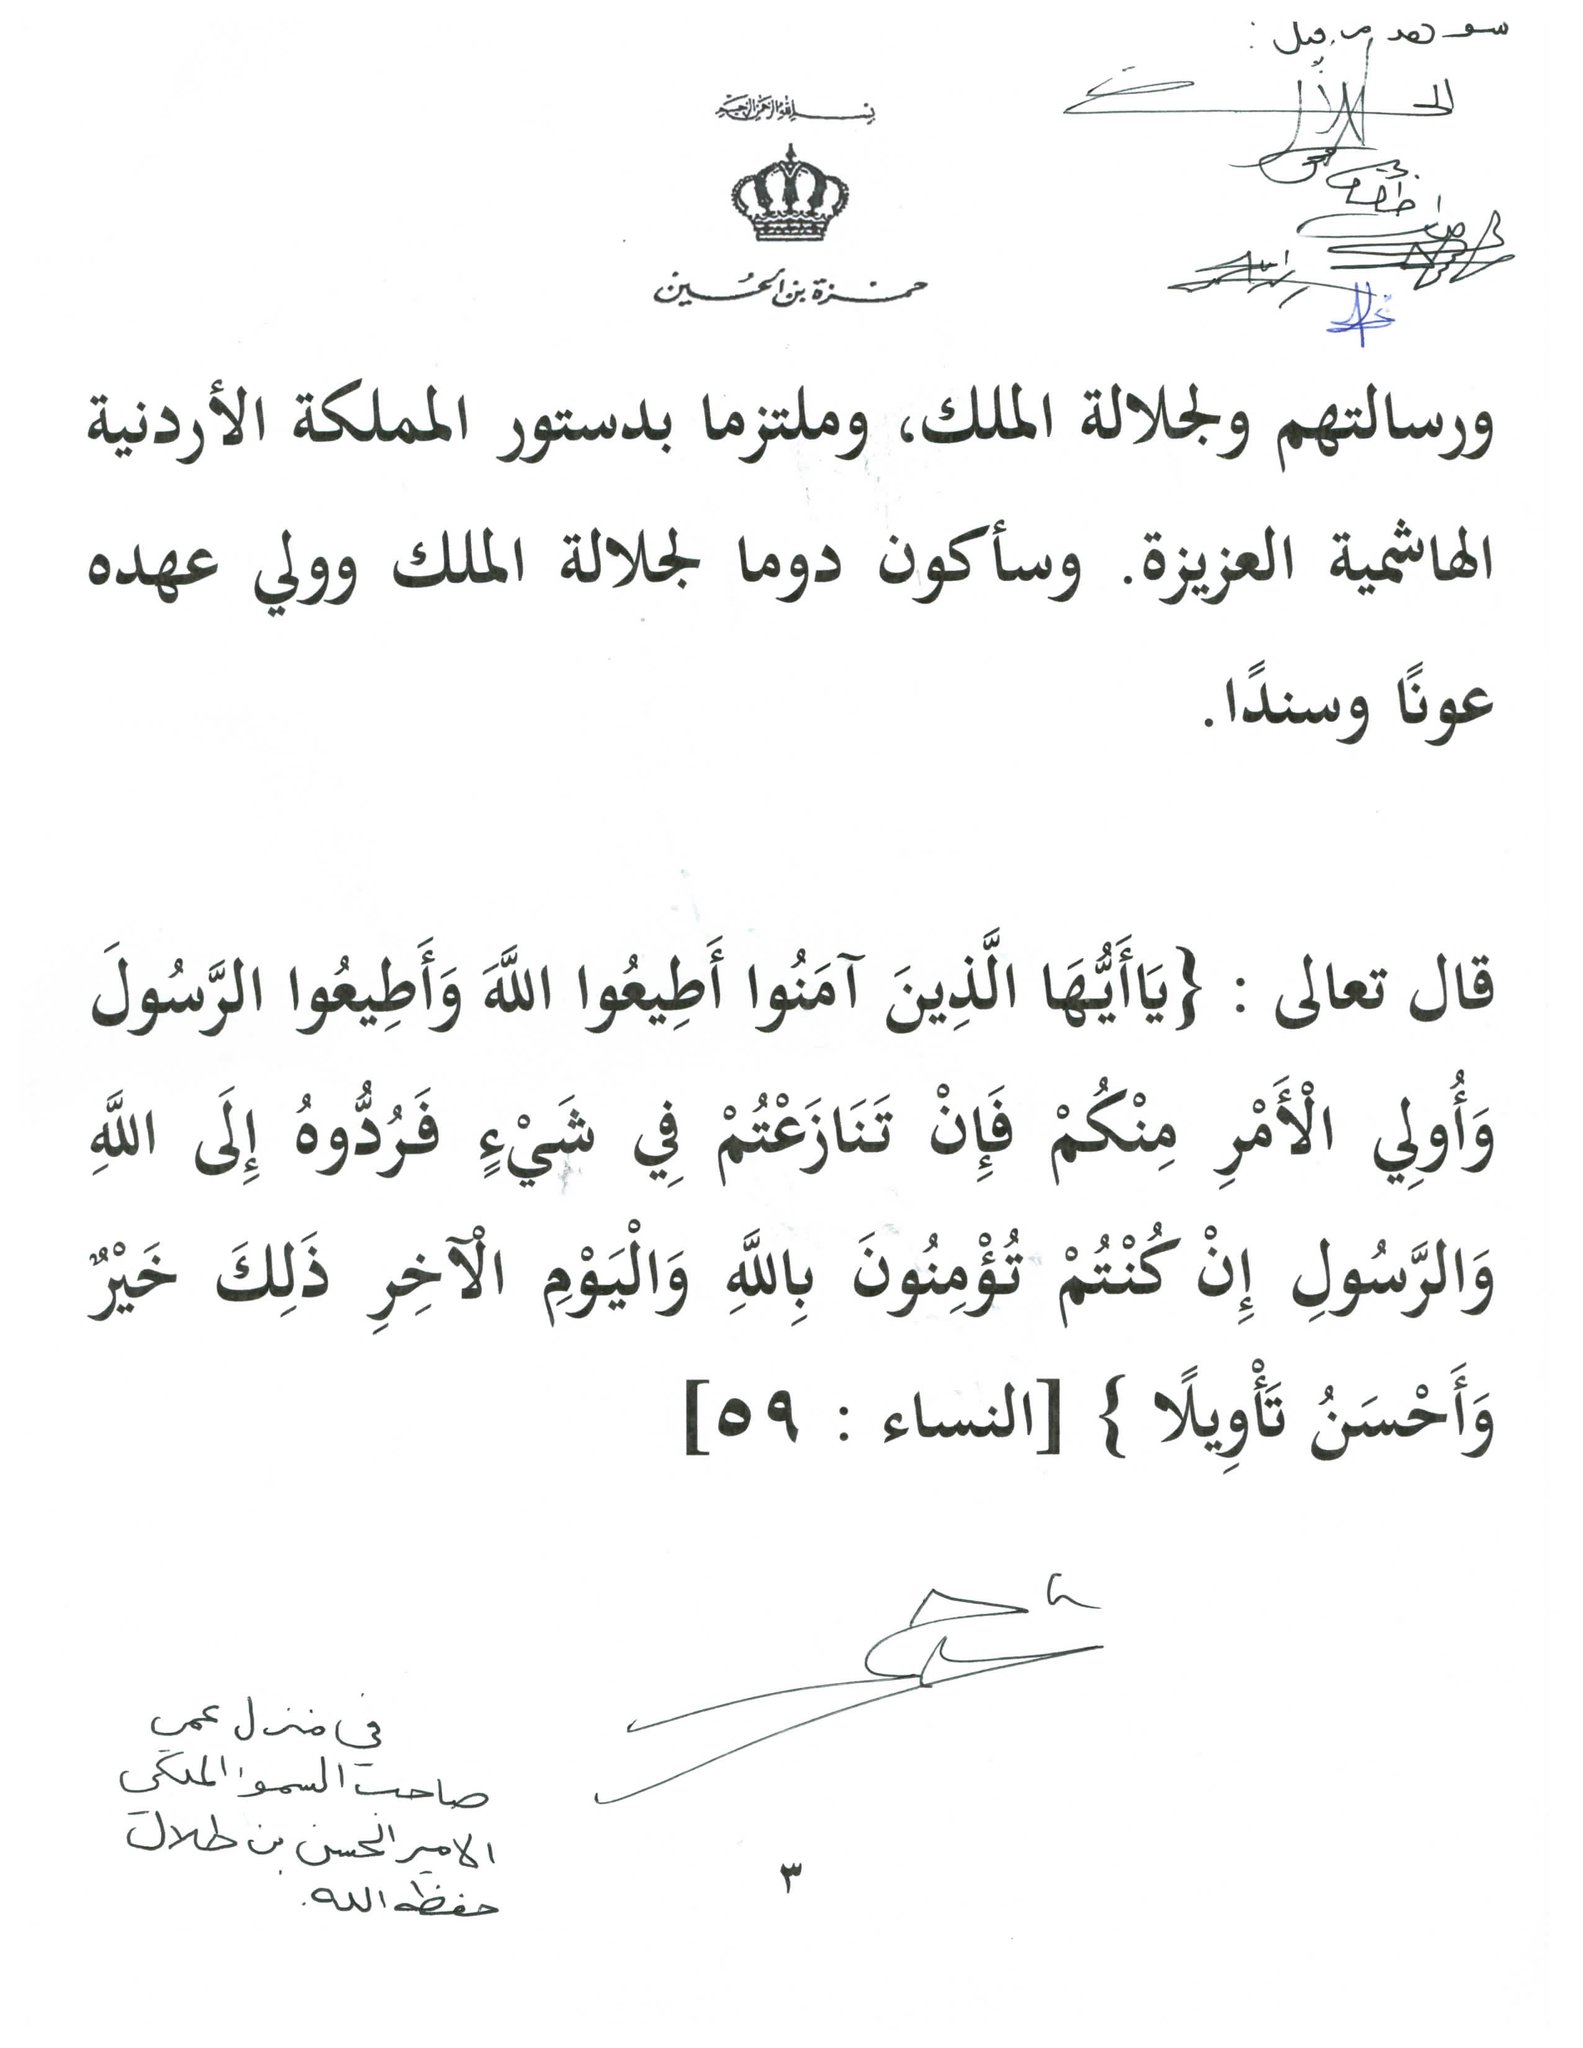 الأمير حمزه يوقع رسالة في منزل الأمير الحسن بن طلال .. "أضع نفسي بين يدي جلالة الملك" .. بيان 